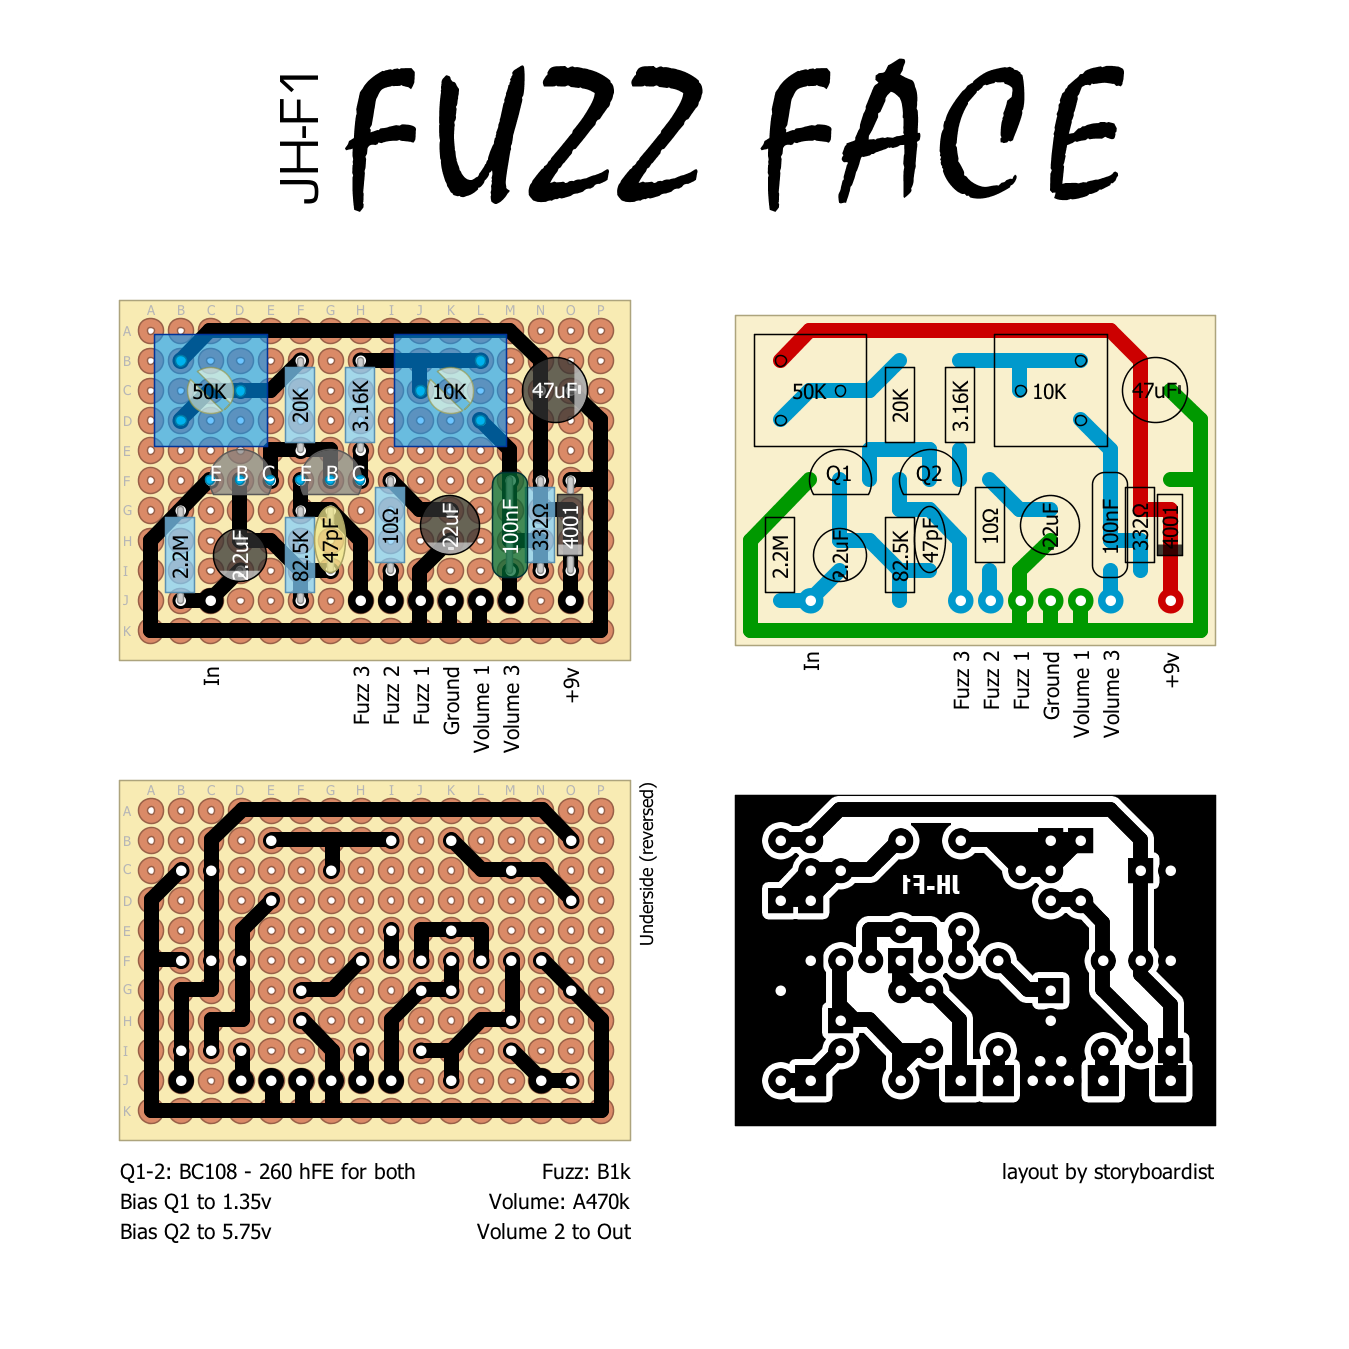 Dunlop Fuzz Face Schematic